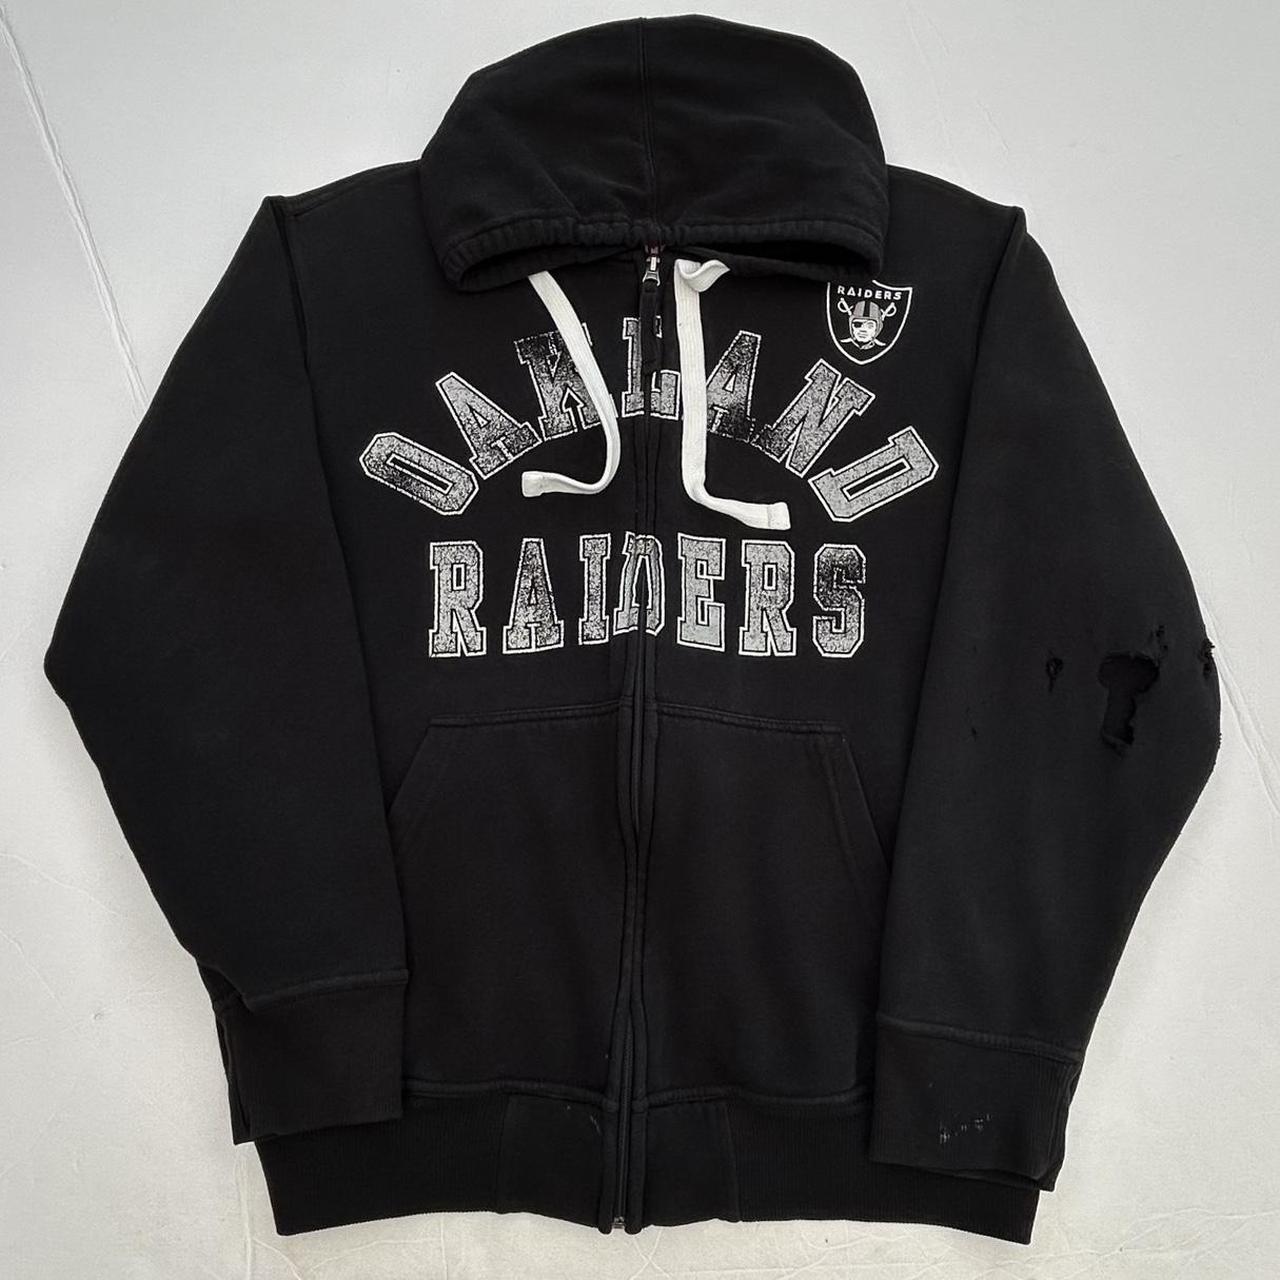 raiders zip hoodie